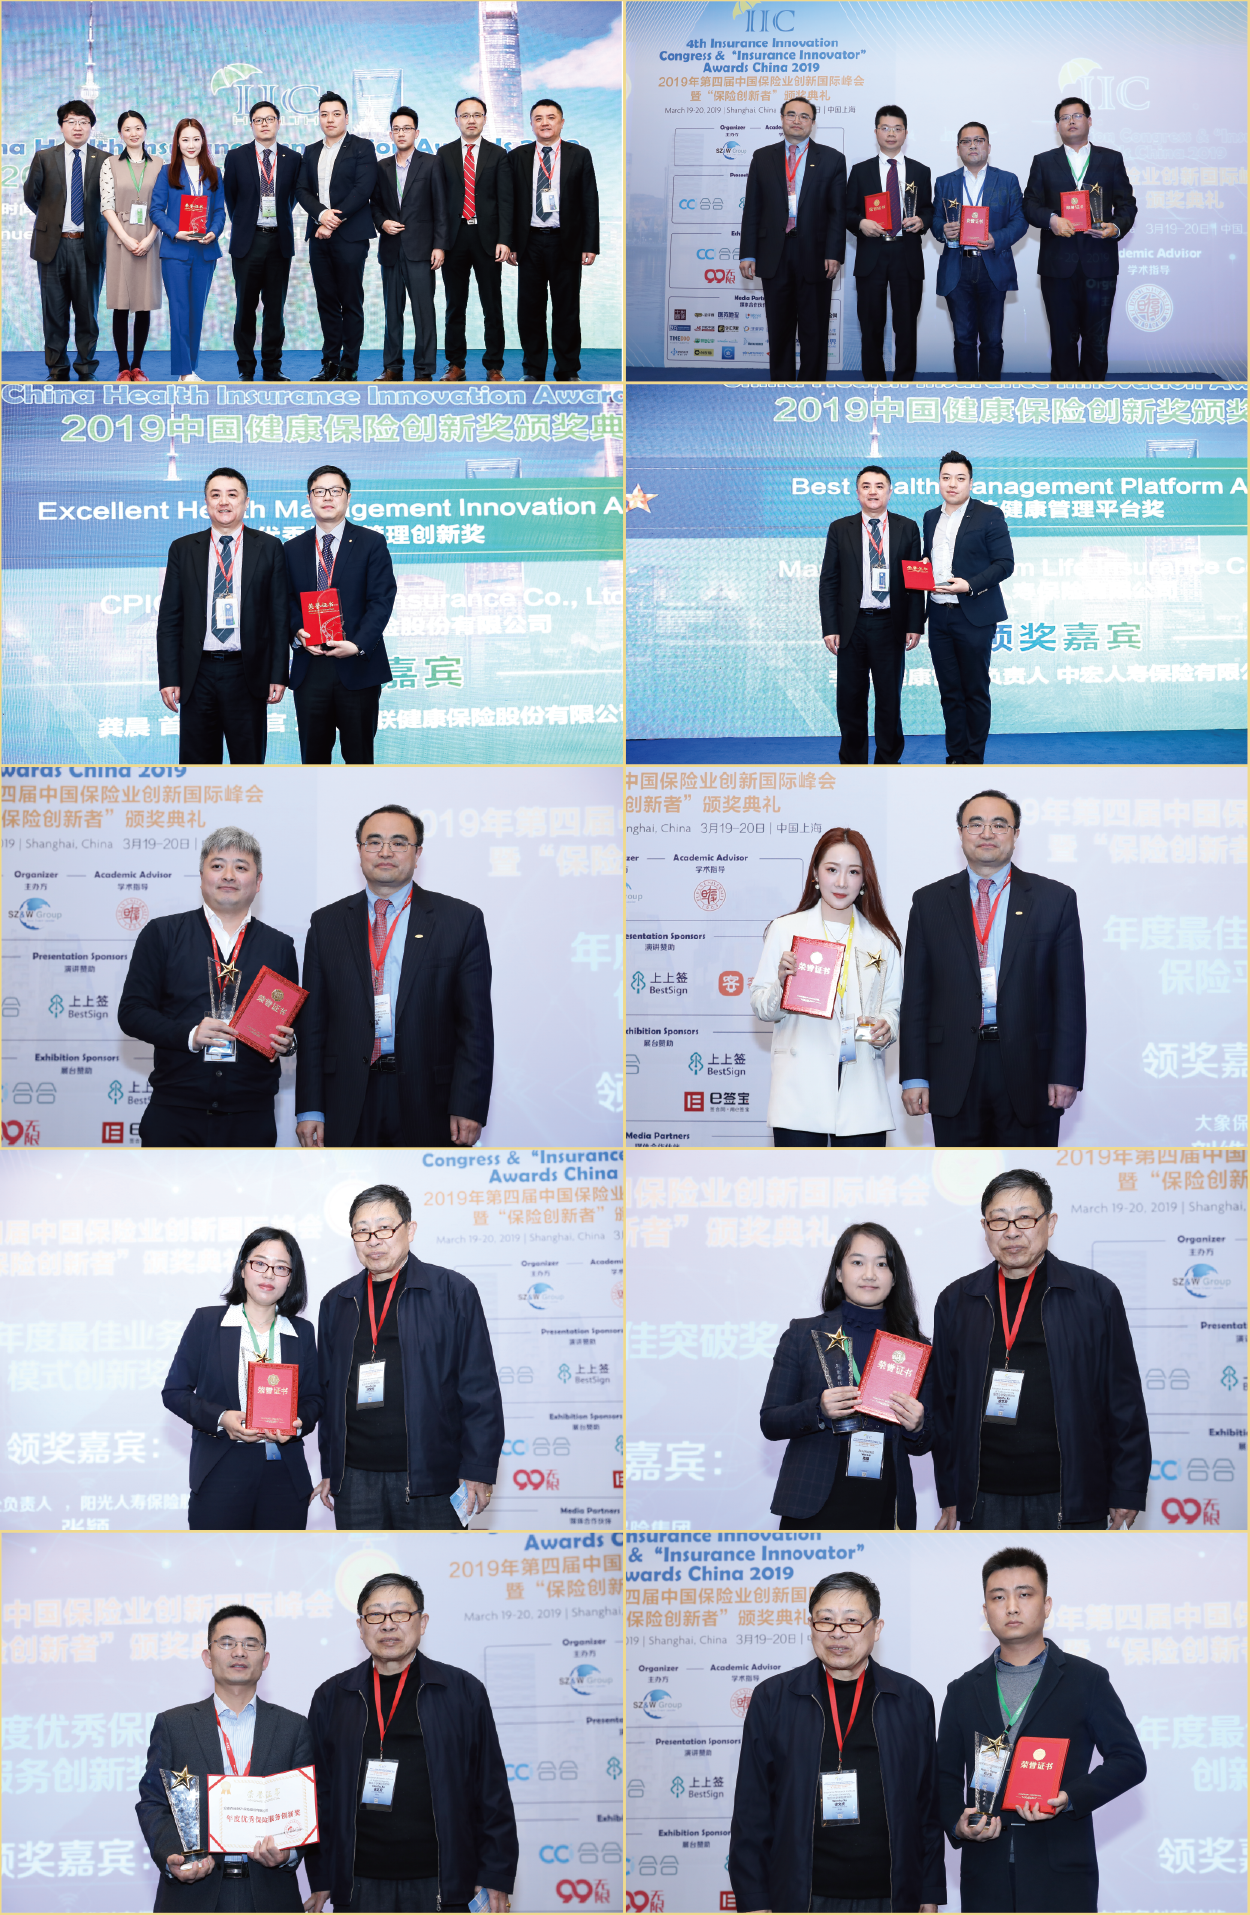 保险行业的年度盛会——2021年第四届中国保险大数据分析与人工智能创新国际峰会暨“保险创新者大奖”